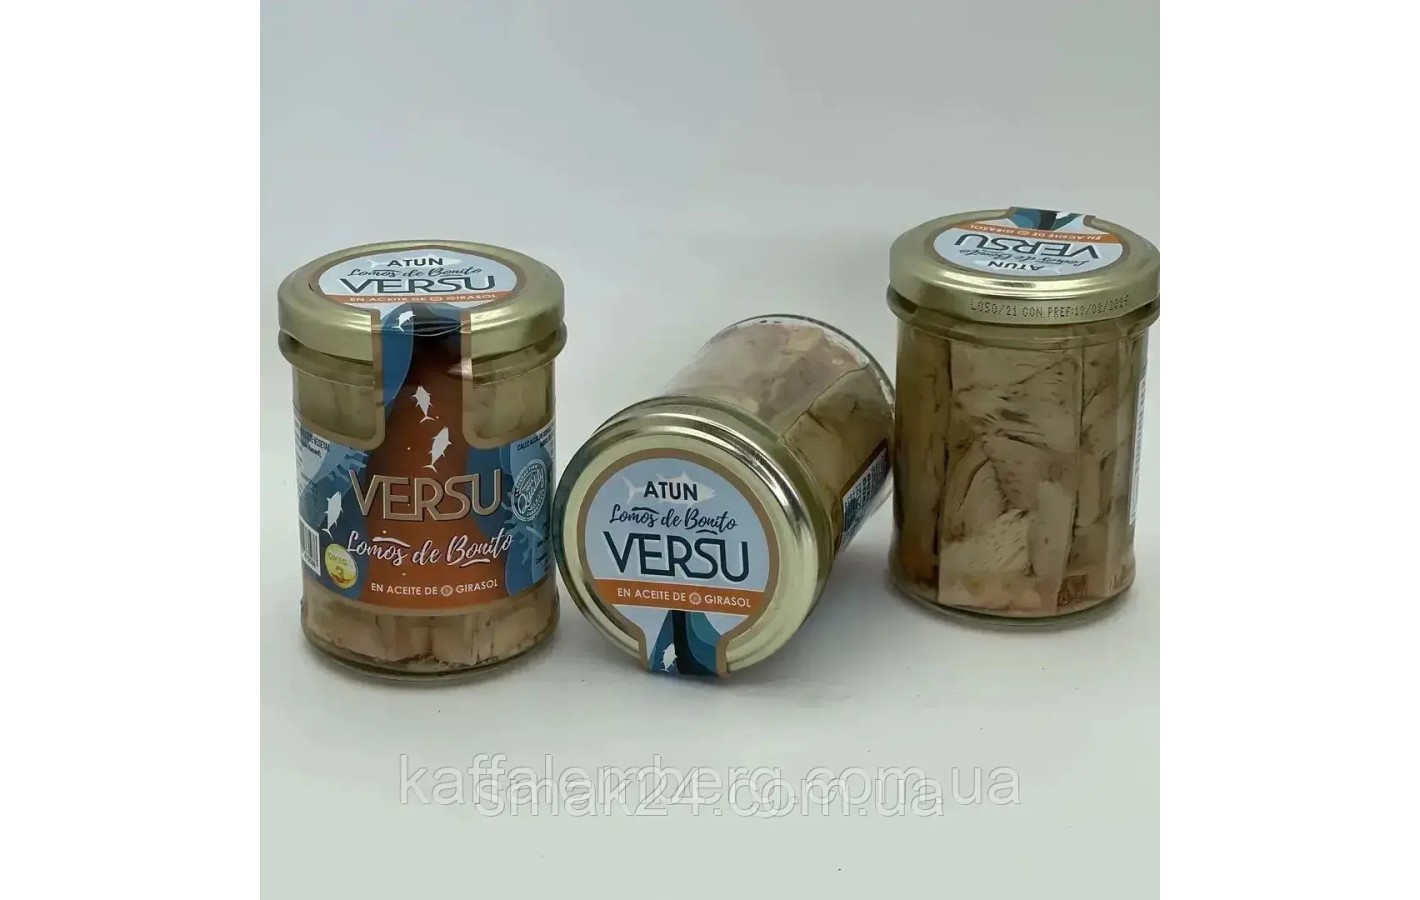 Филе тунца в подсолнечном масле Versu Atun en aceite de girasol 190г/125г Испания